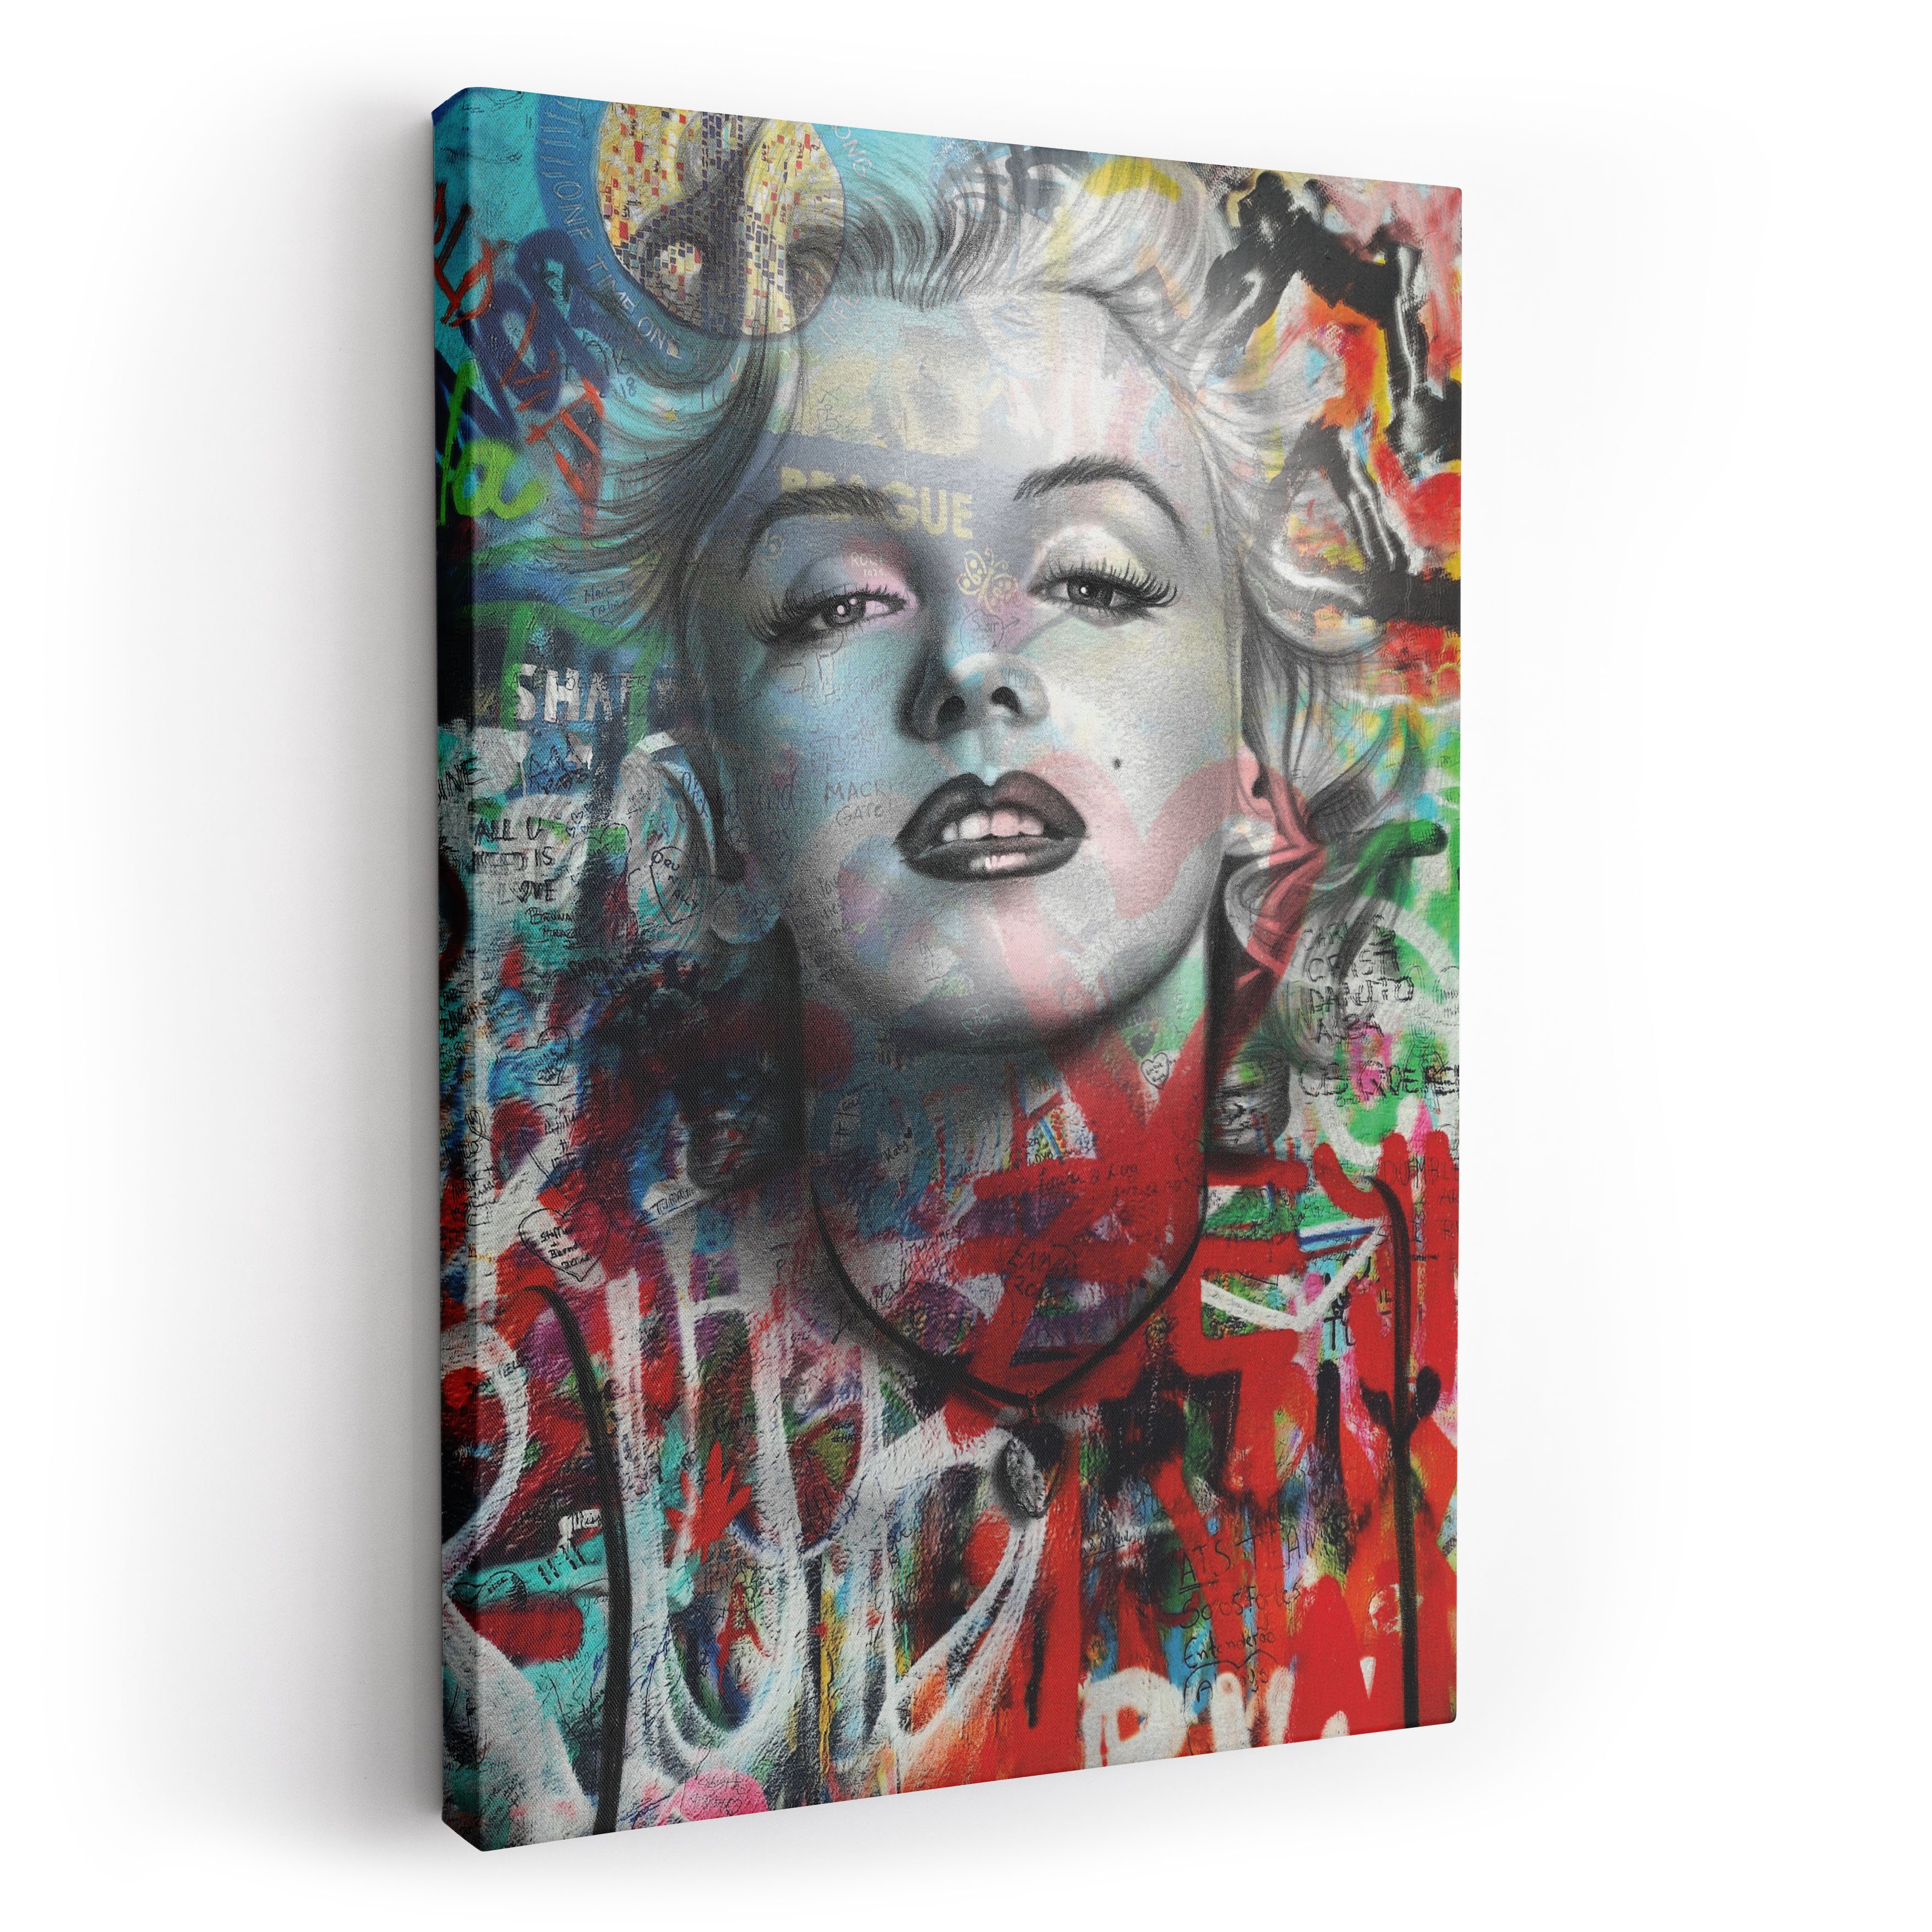 ArtMind XXL-Wandbild Marilyn Monroe - Graffiti Art, Premium Wandbilder als Poster & gerahmte Leinwand in 4 Größen, Wall Art, Bild, moderne Kunst